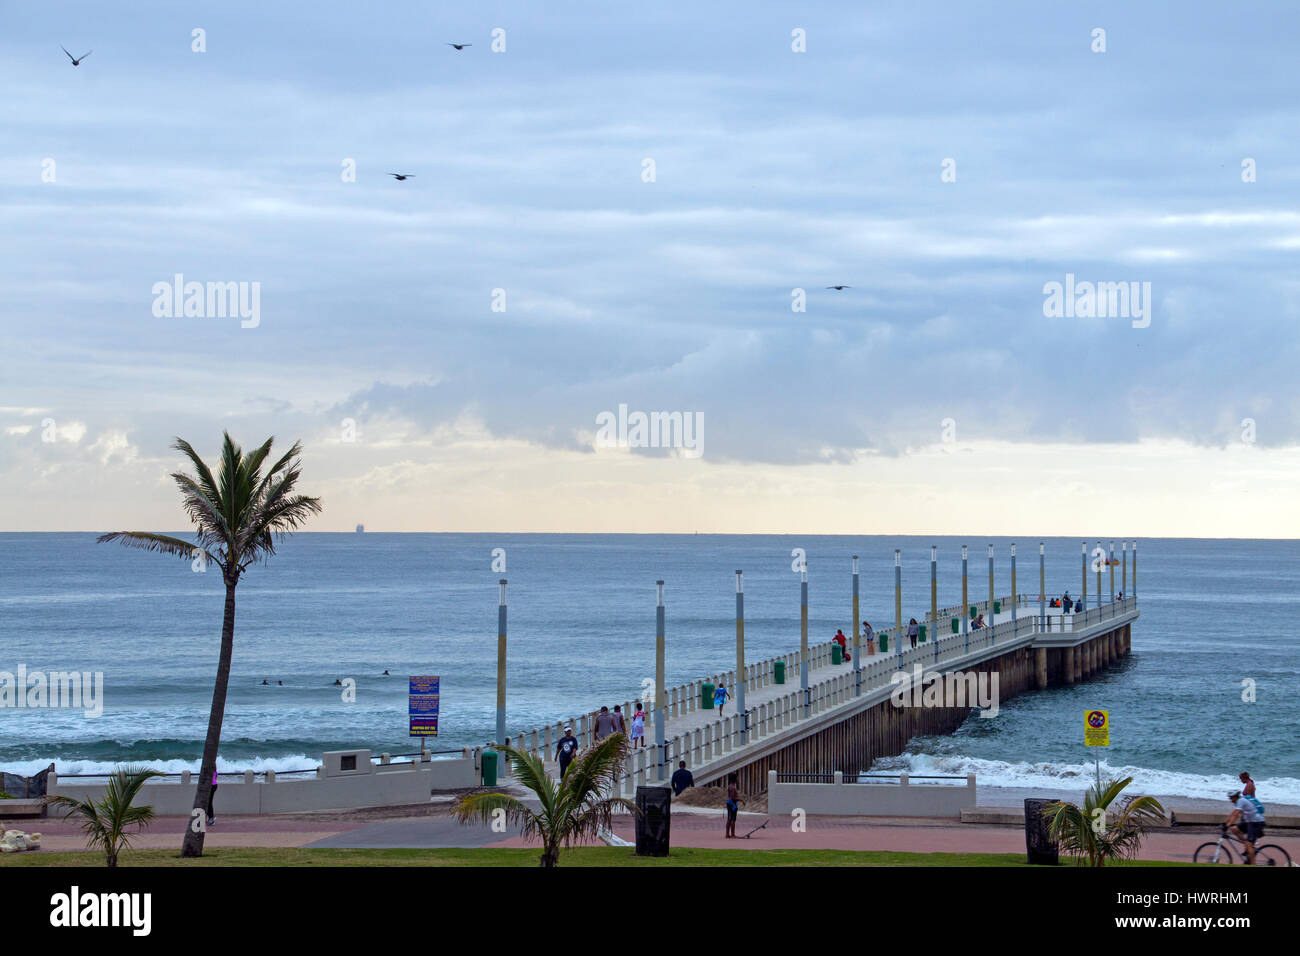 DURBAN, Südafrika - 23. März 2017: viele unbekannte am frühen Morgen Besucher am Strand und Pier gegen ruhige See und bewölkten blauen Skyline in Durban Stockfoto